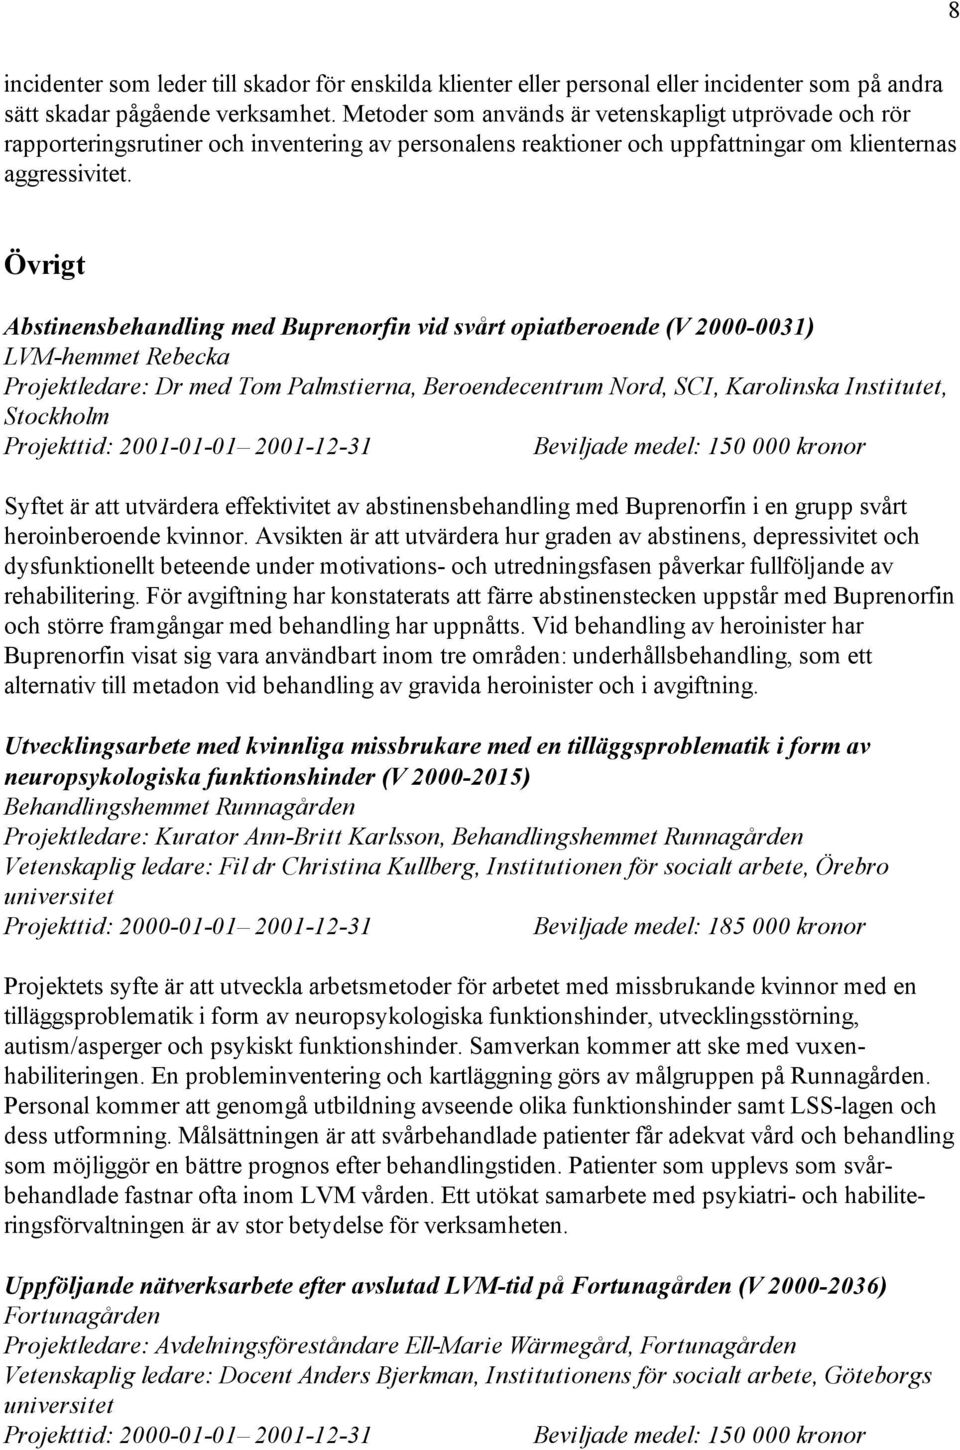 Övrigt Abstinensbehandling med Buprenorfin vid svårt opiatberoende (V 2000-0031) LVM-hemmet Rebecka Projektledare: Dr med Tom Palmstierna, Beroendecentrum Nord, SCI, Karolinska Institutet, Stockholm